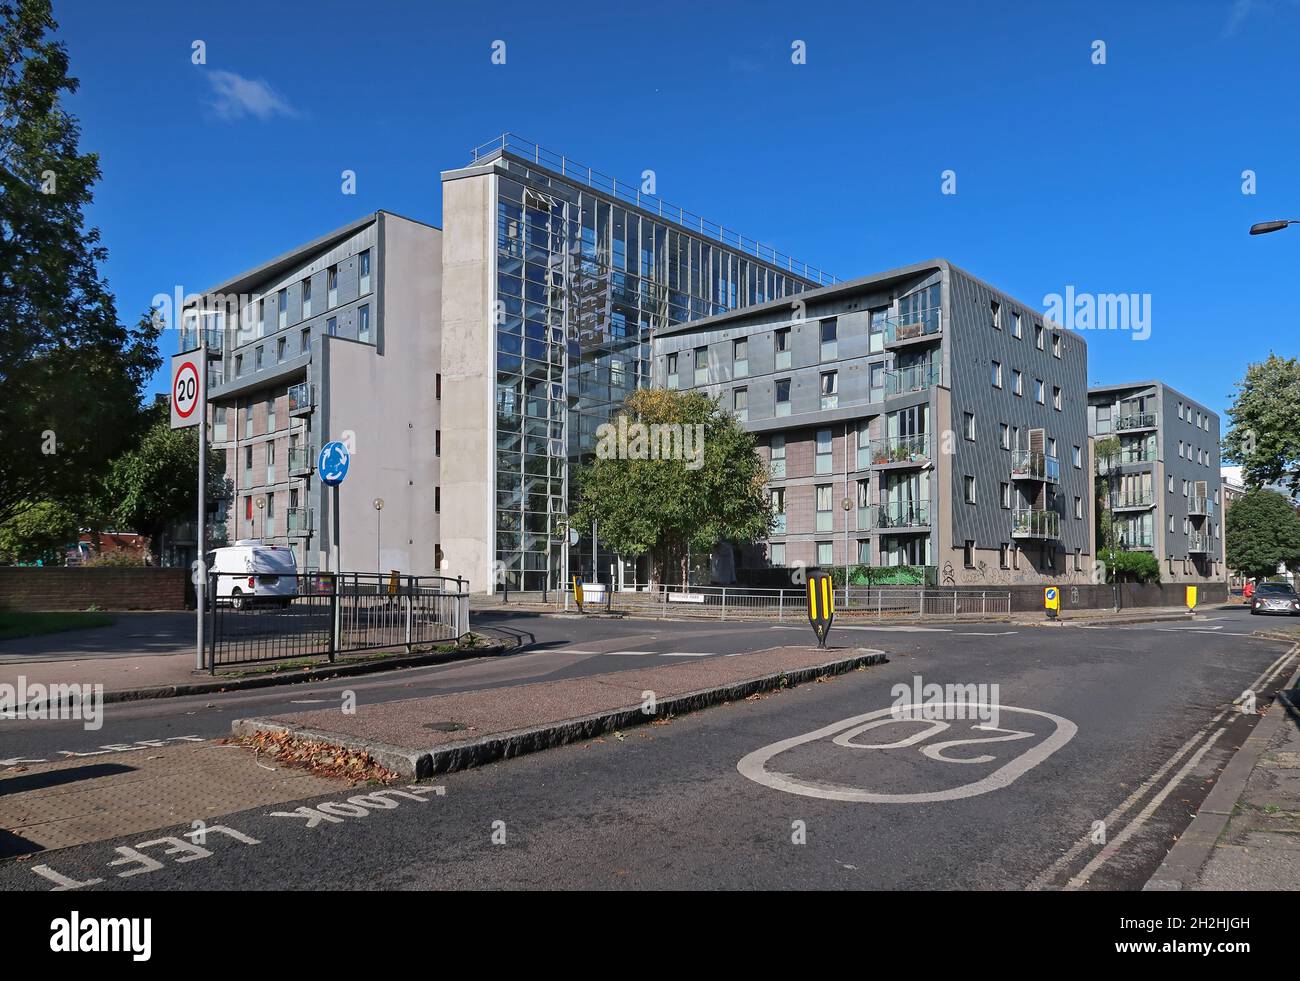 81 Hanover Park, Peckham, London, Großbritannien. Ein disktives, verzinktes Sozialwohnungskonzept von Alan Camp Architects. Nominiert für den RIBA Award 2006. Stockfoto